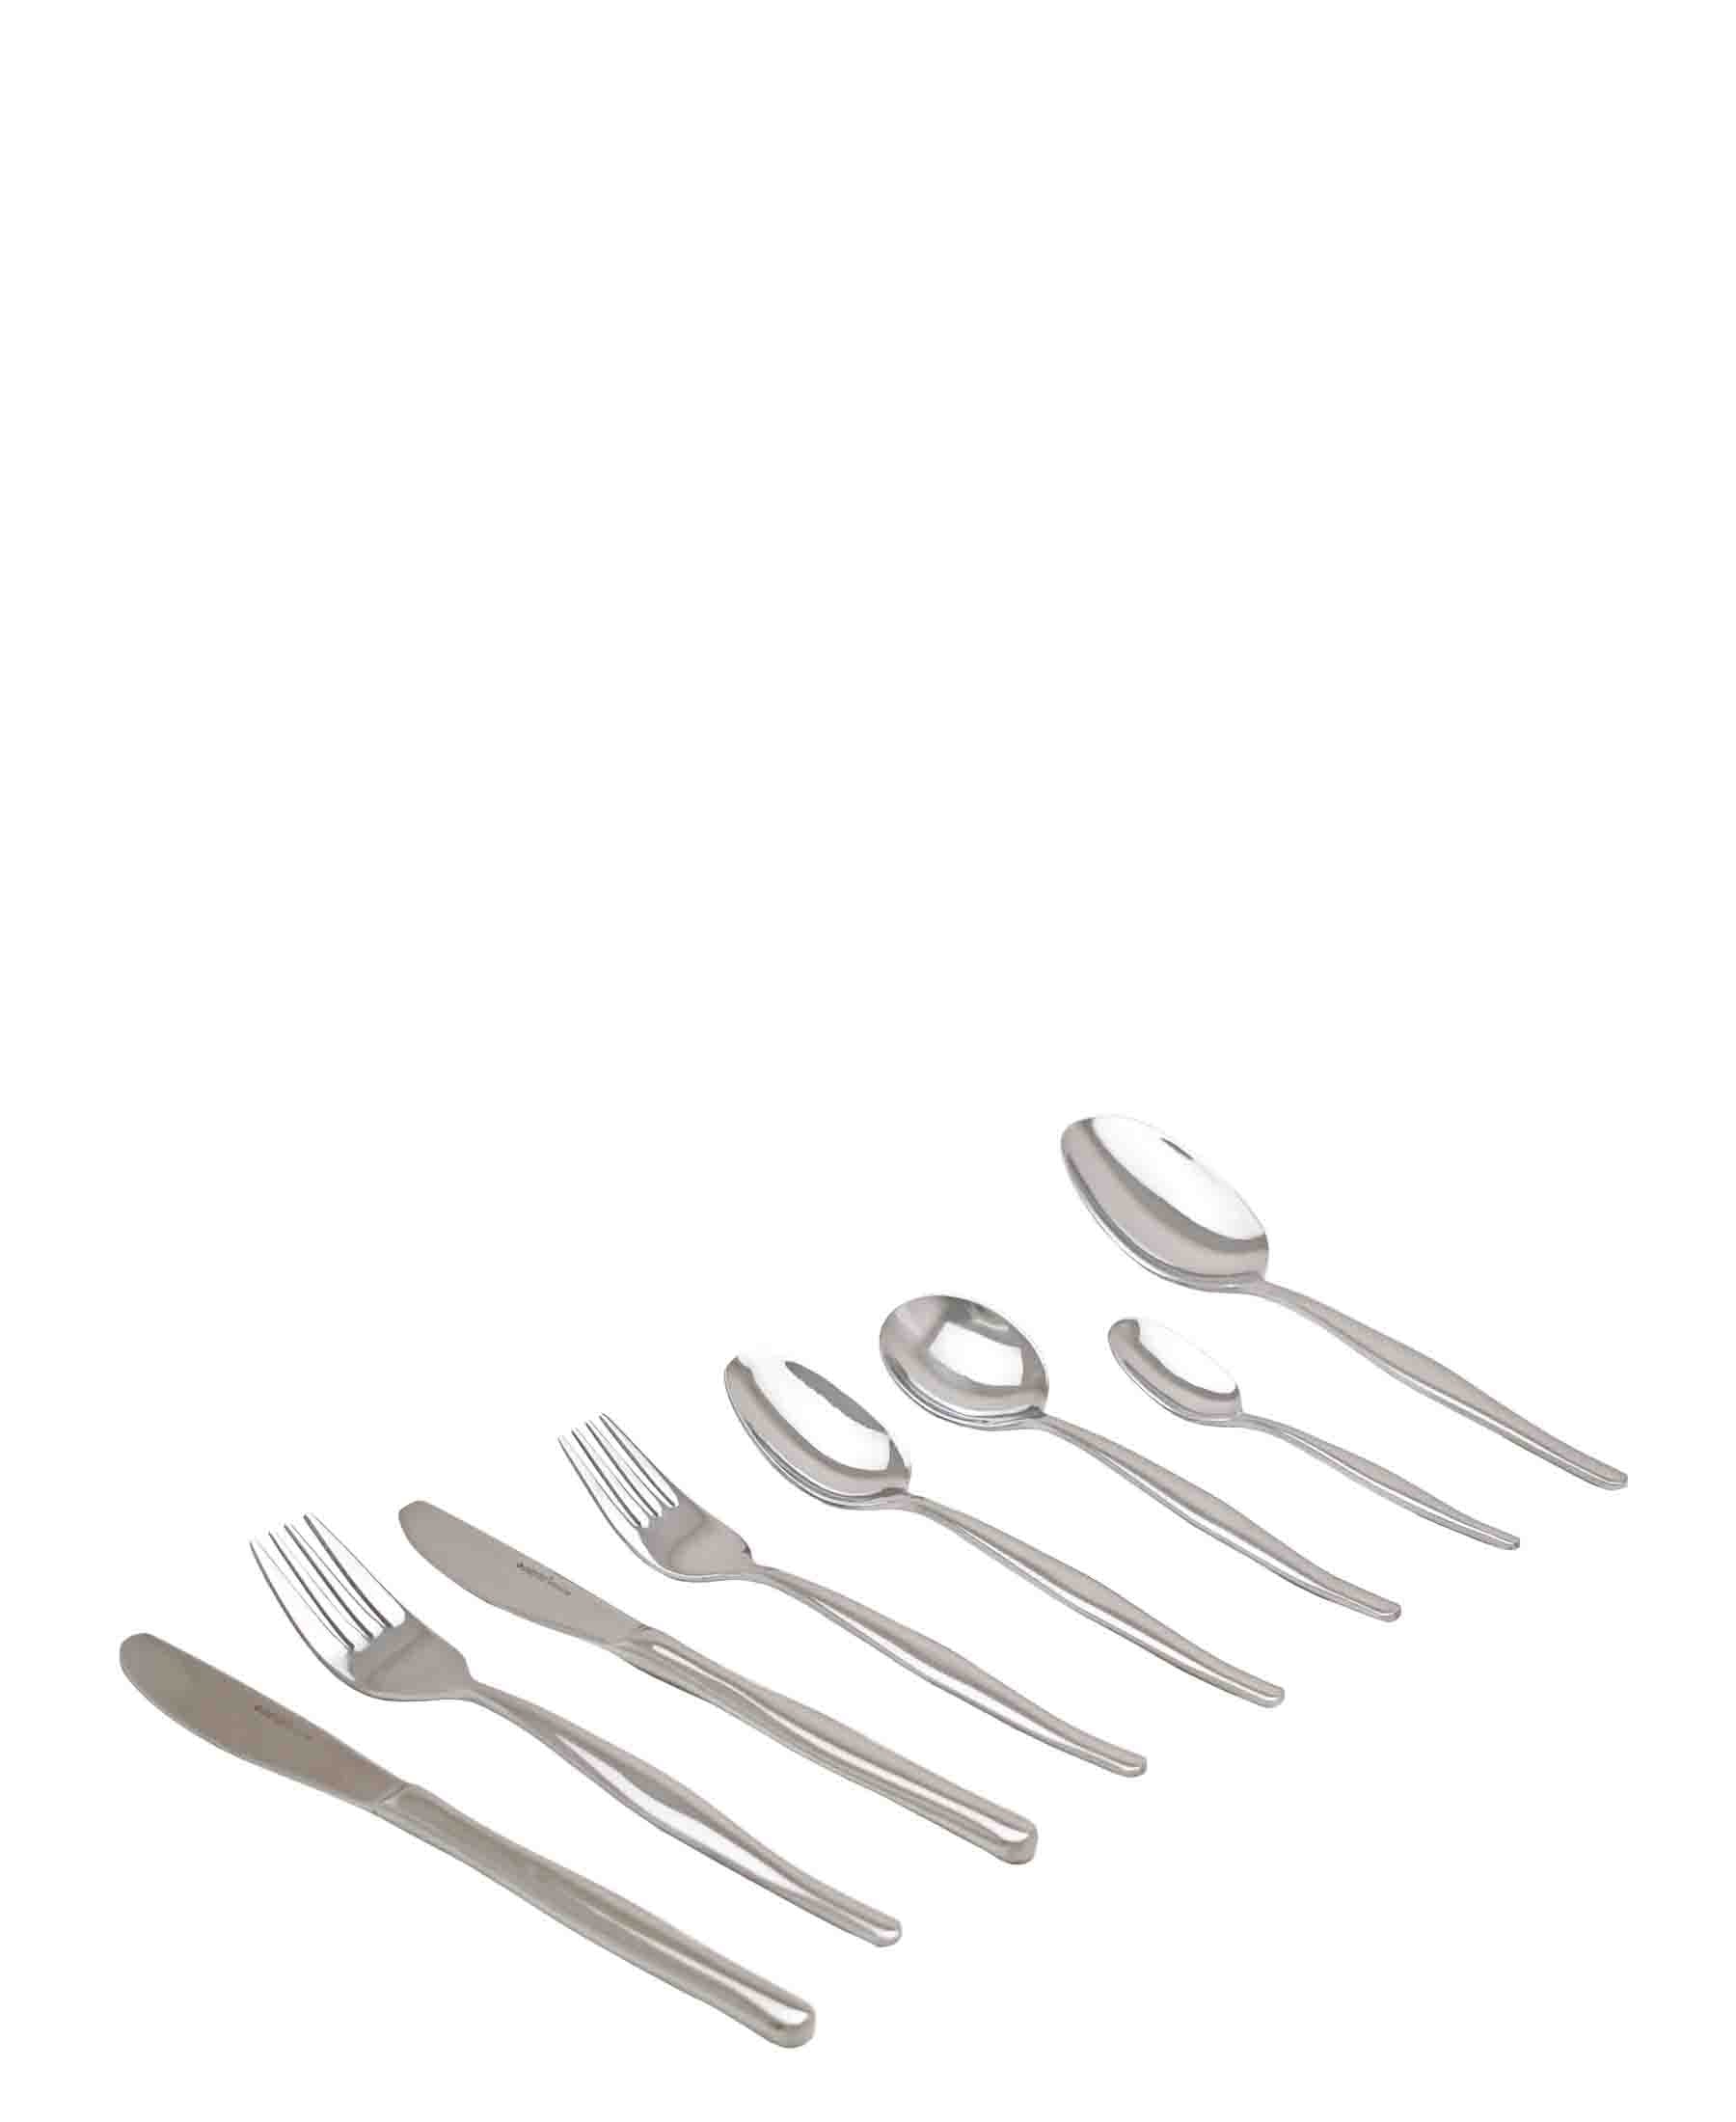 Eetrite Newport 44 Piece Cutlery Set - Silver